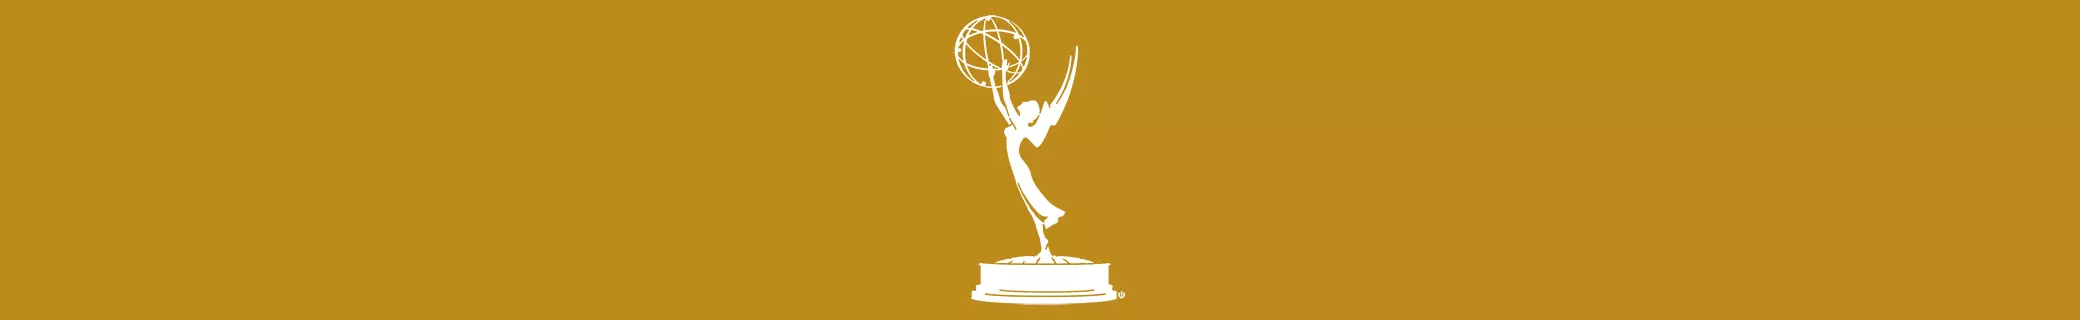 Emmy Awards banner